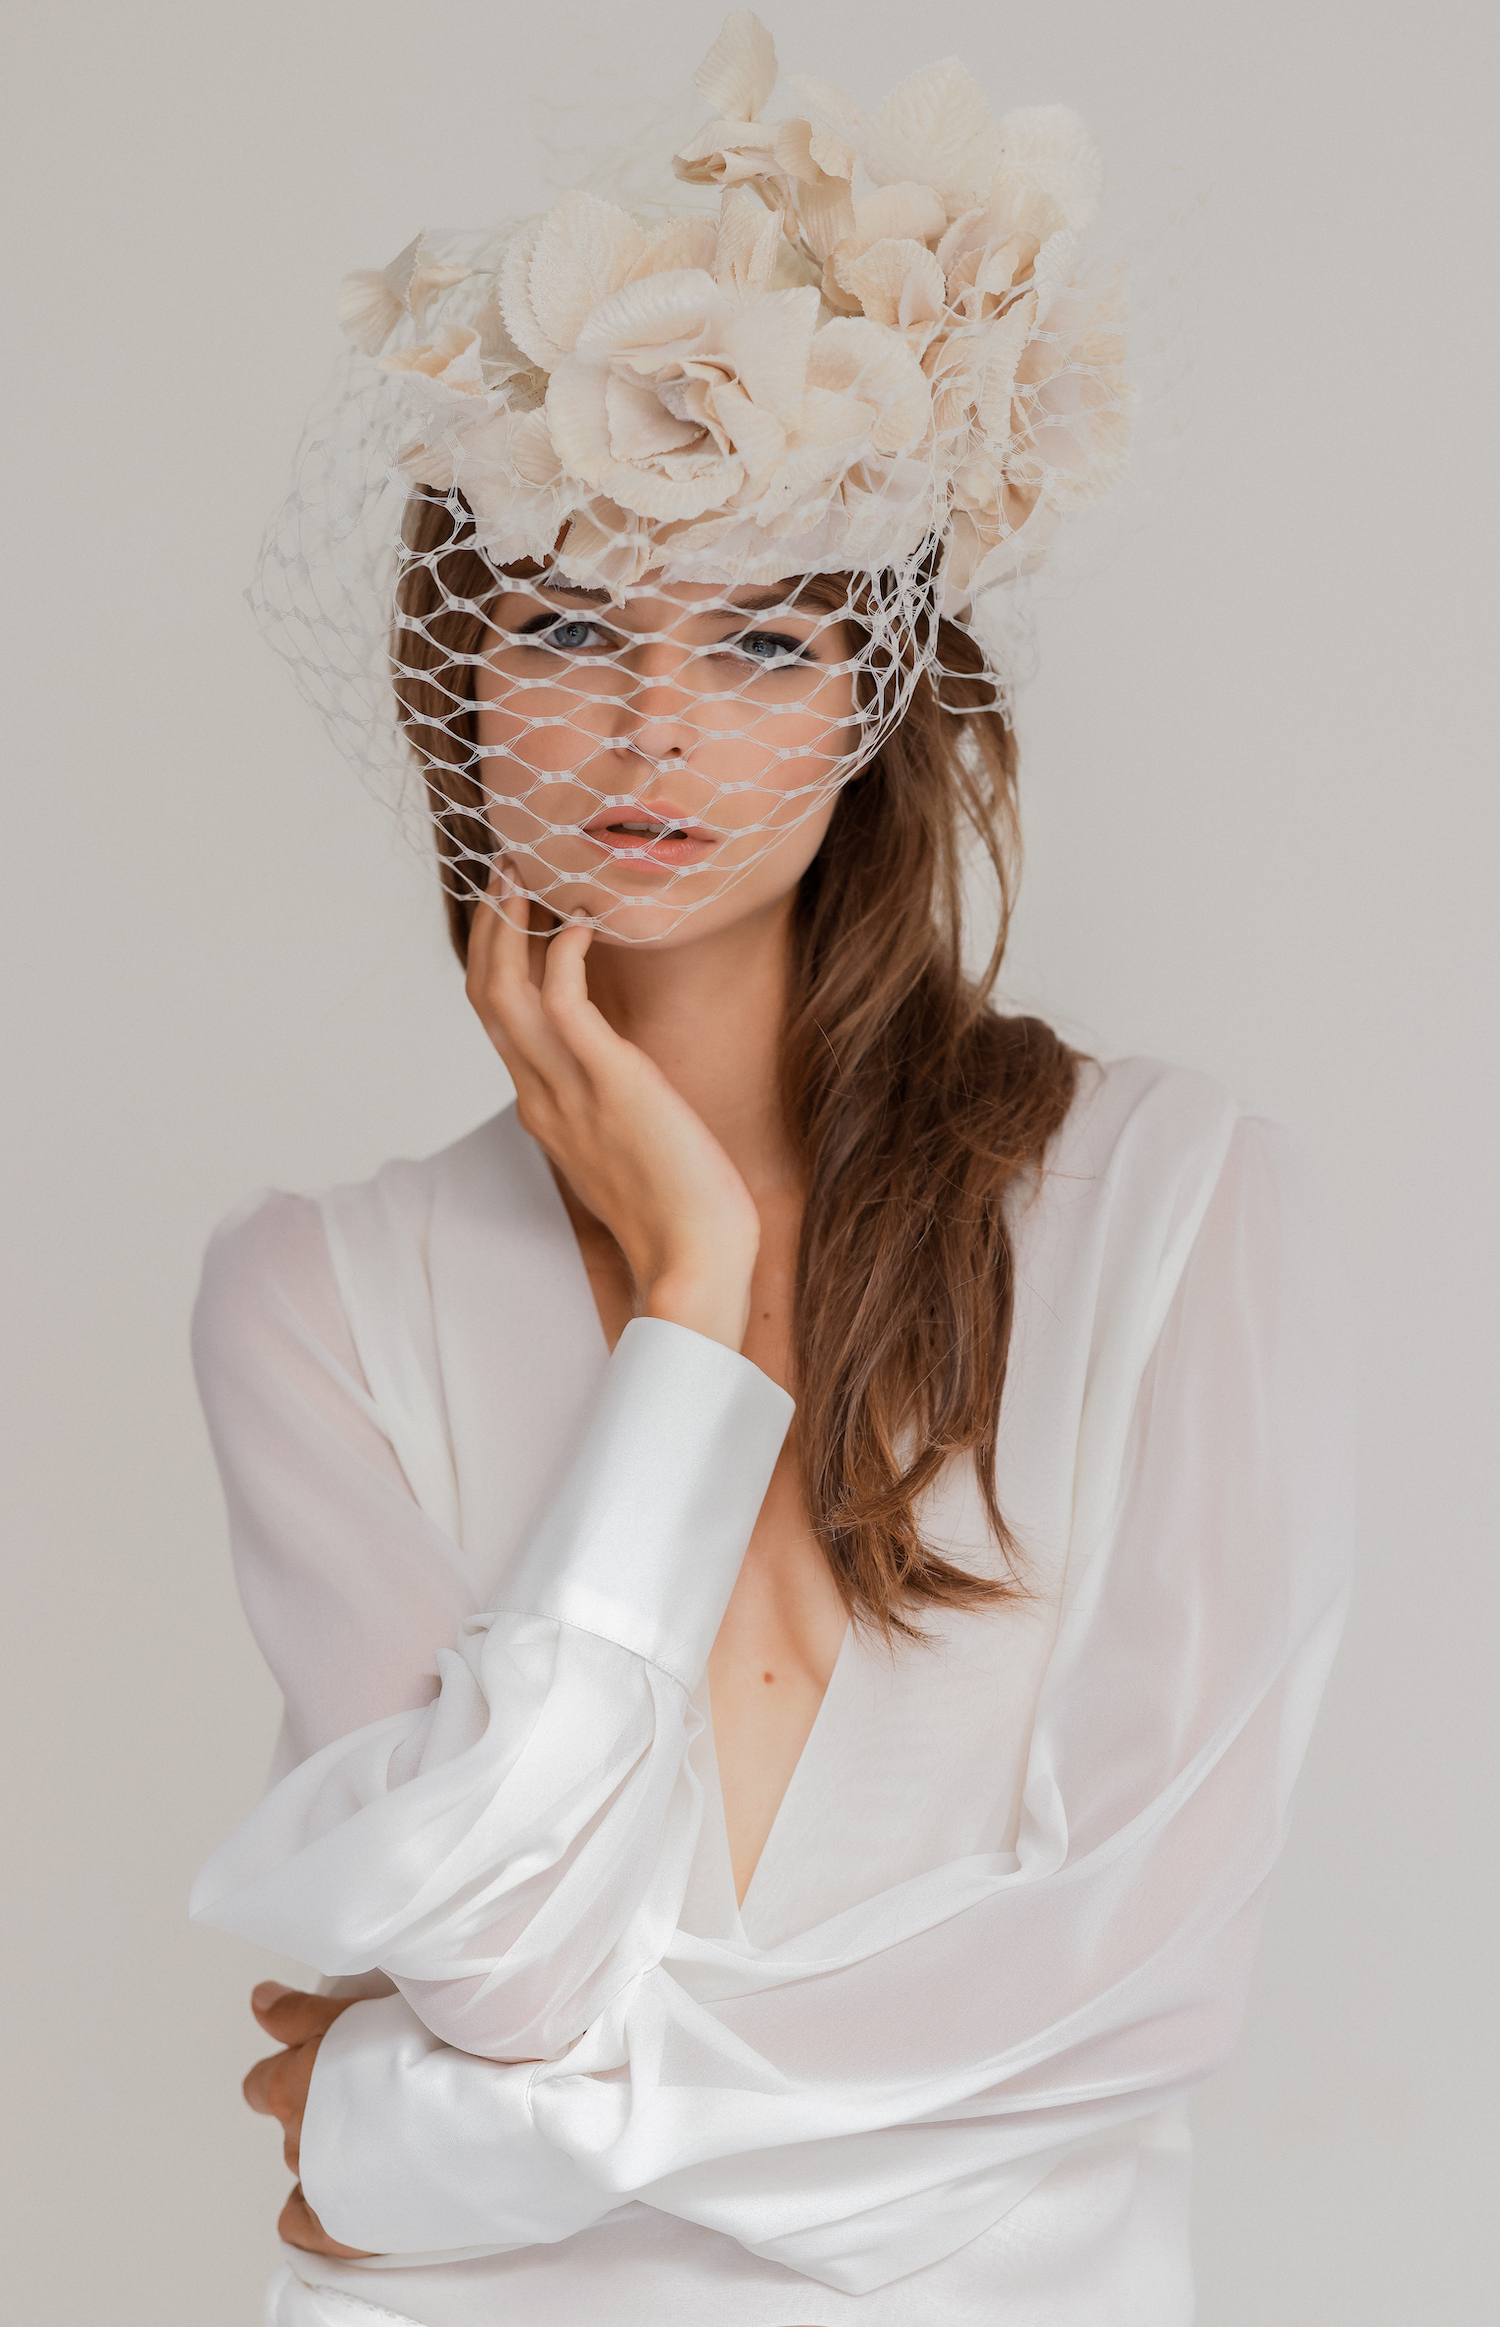 Victoire Vermeulen Collection 2021 - Robes de mariée - Blog Mariage Madame C